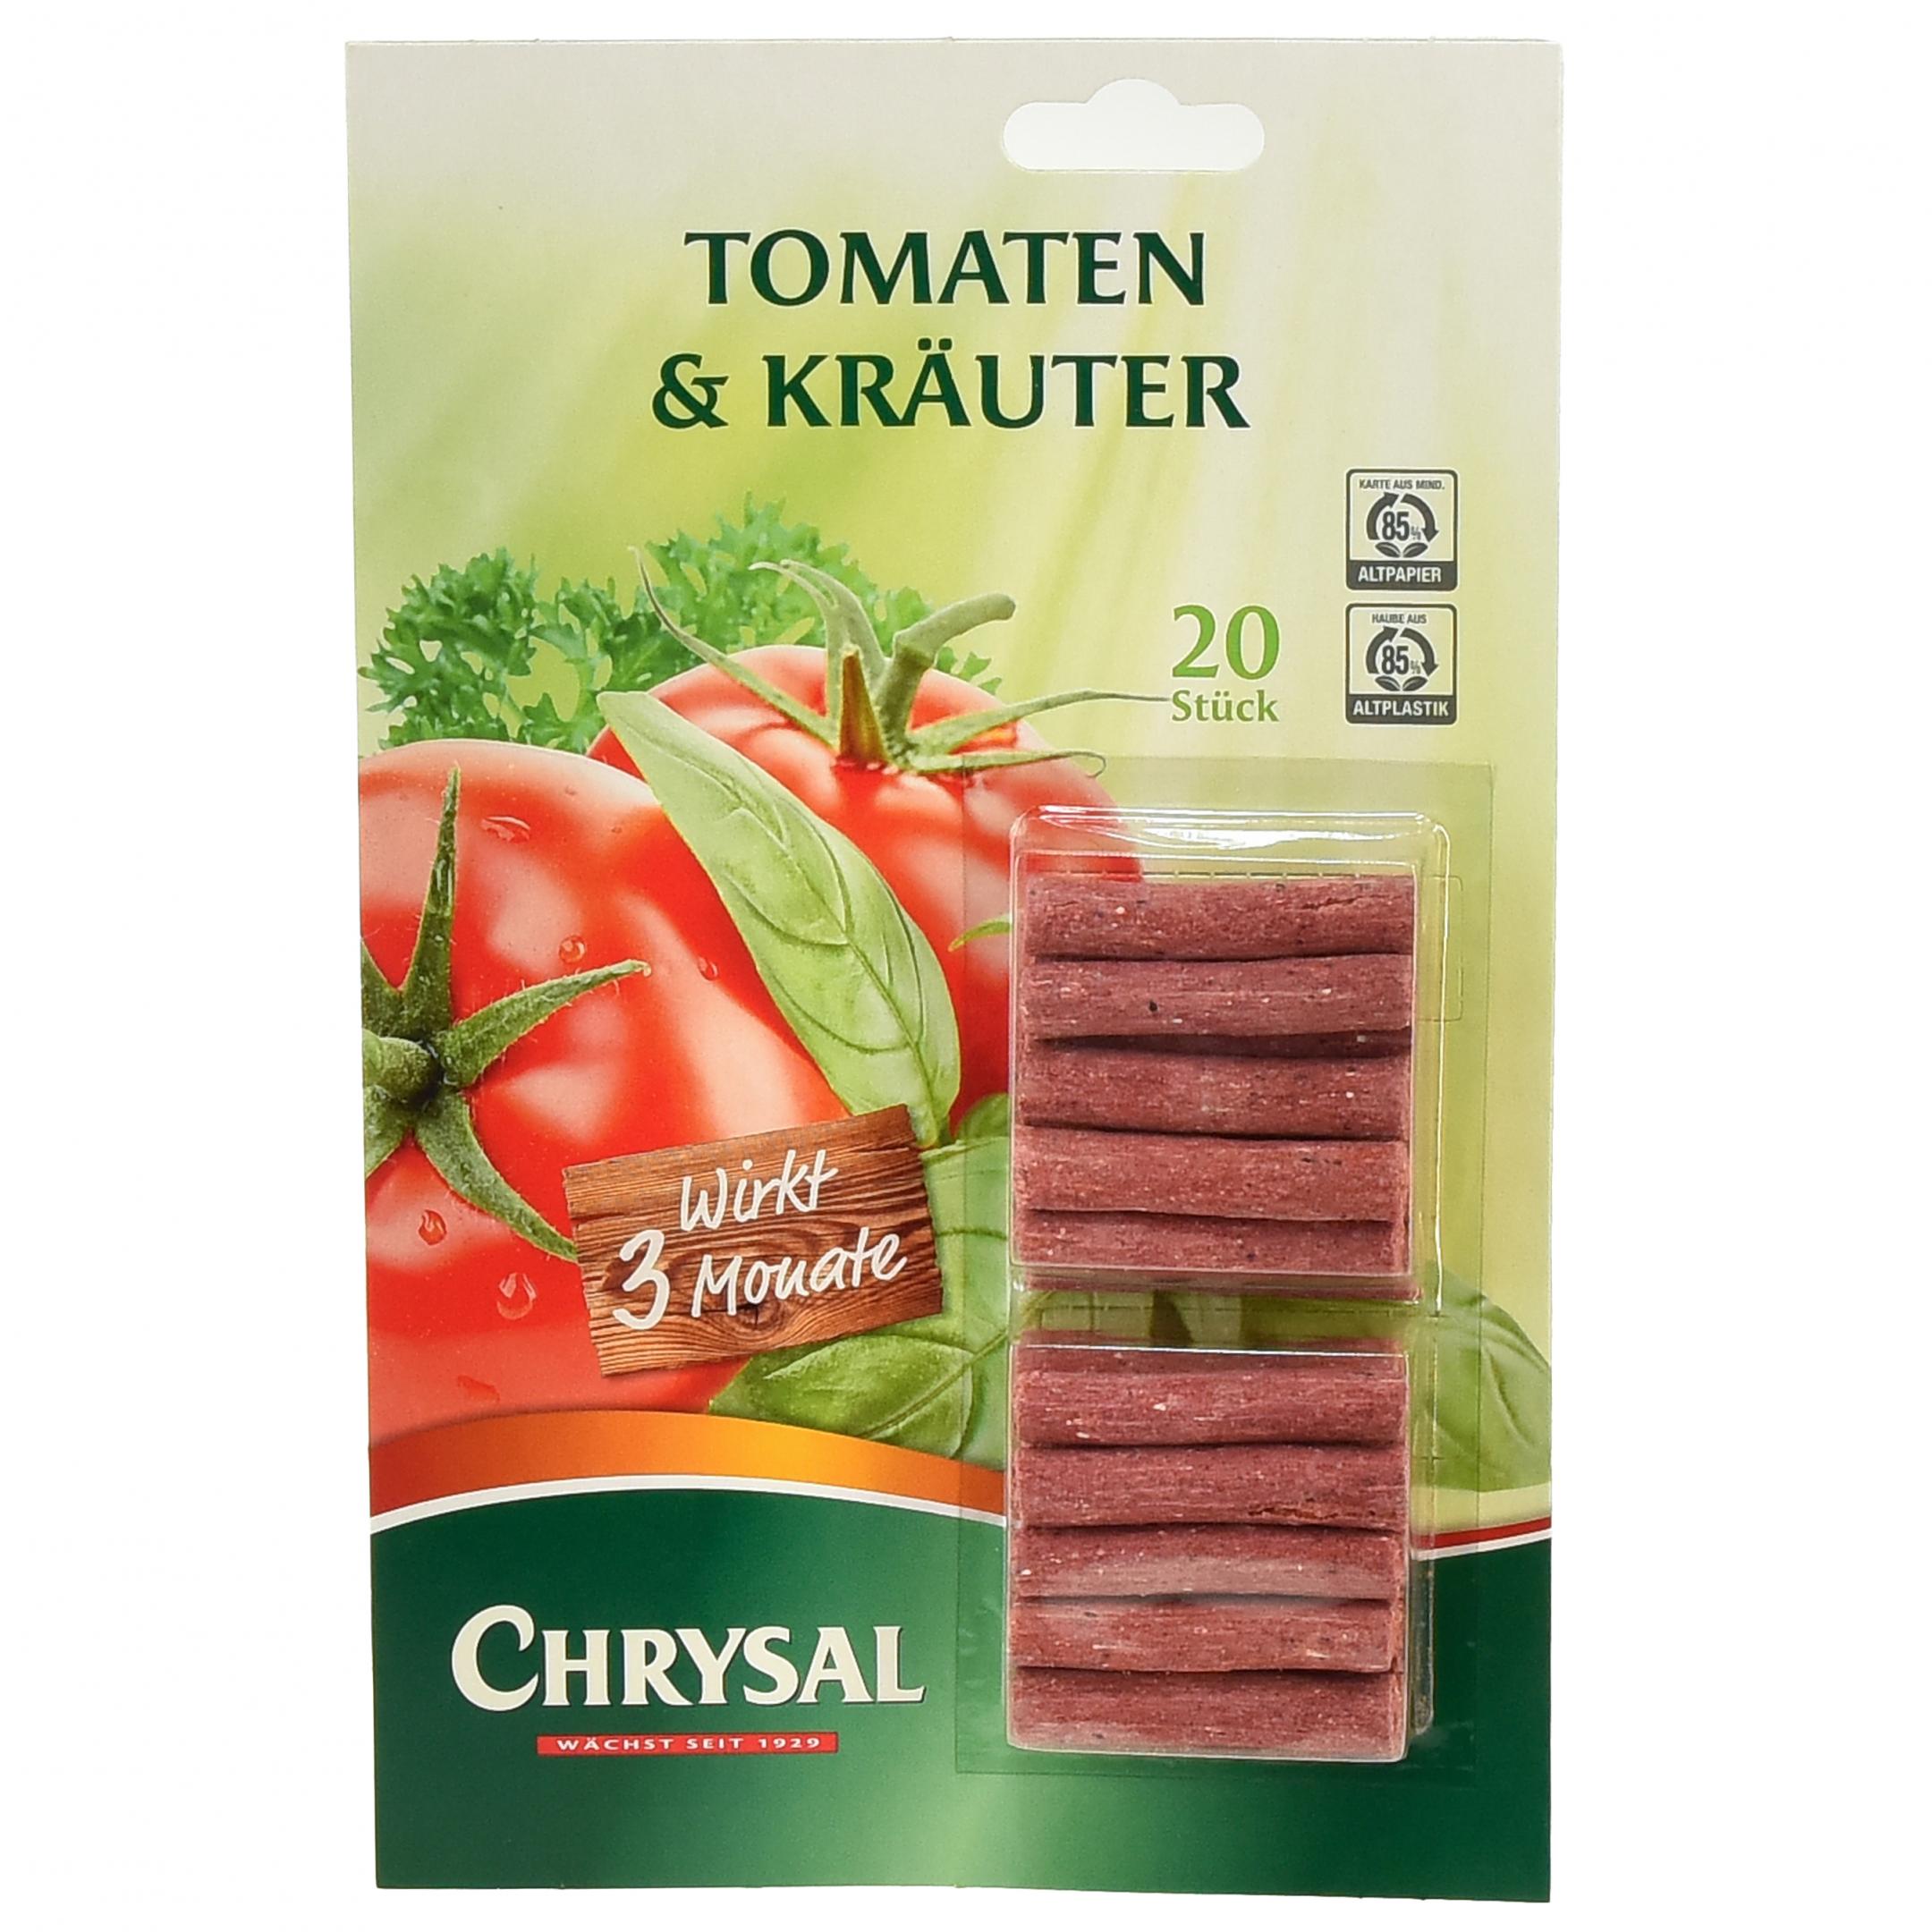 Floristik24 Düngestäbchen Tomaten & Kräuter 3 Monate Chrysal 20St